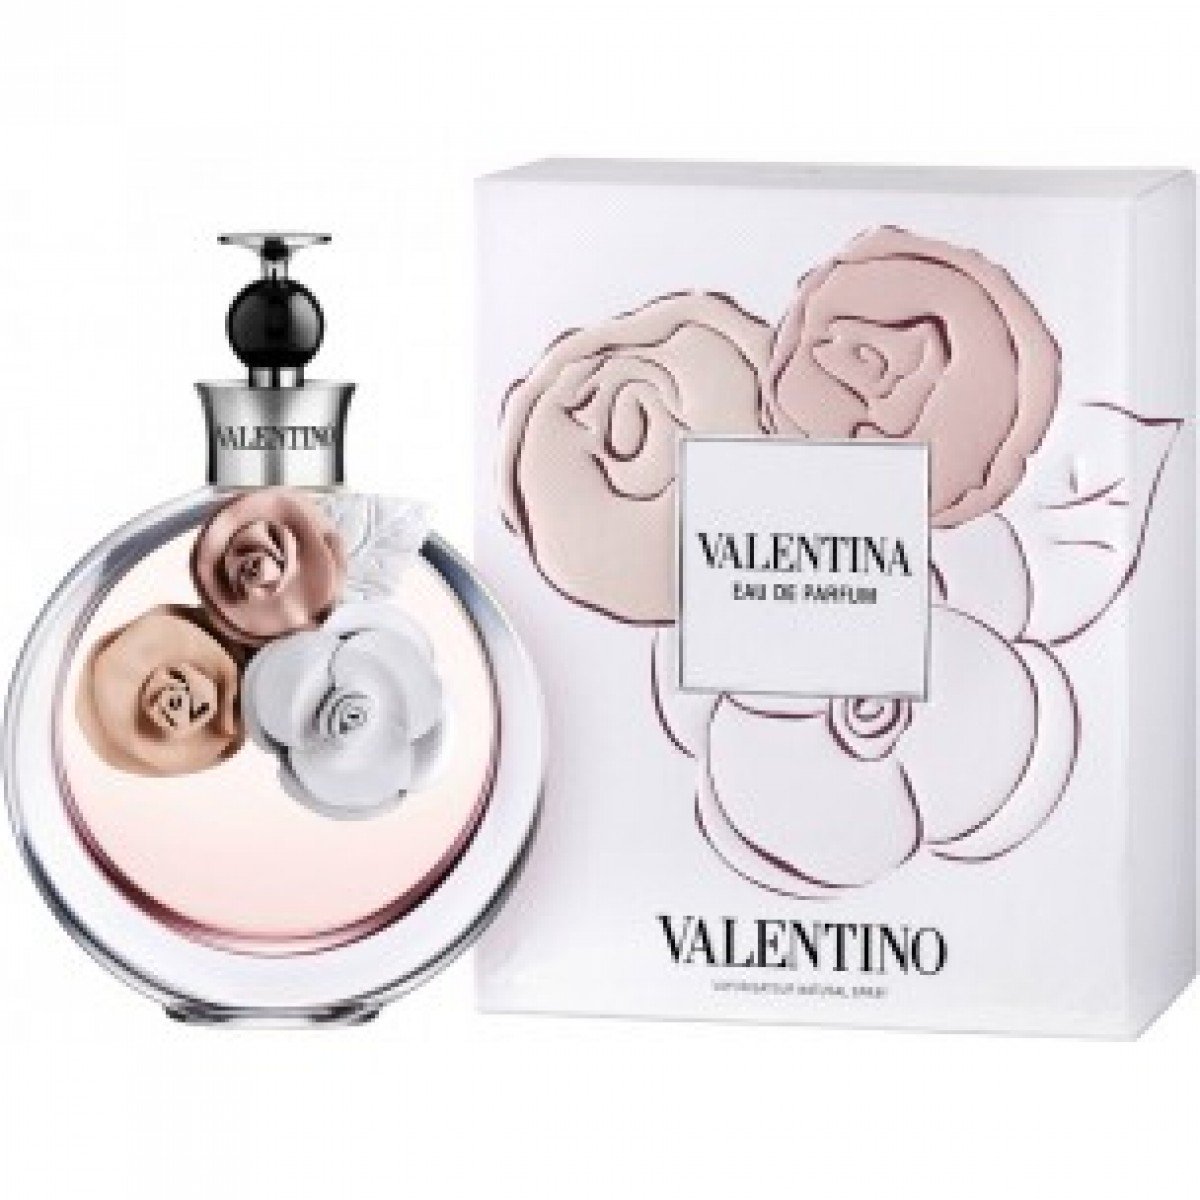 Valentina Eau de Parfum 80ml - D'Scentsation